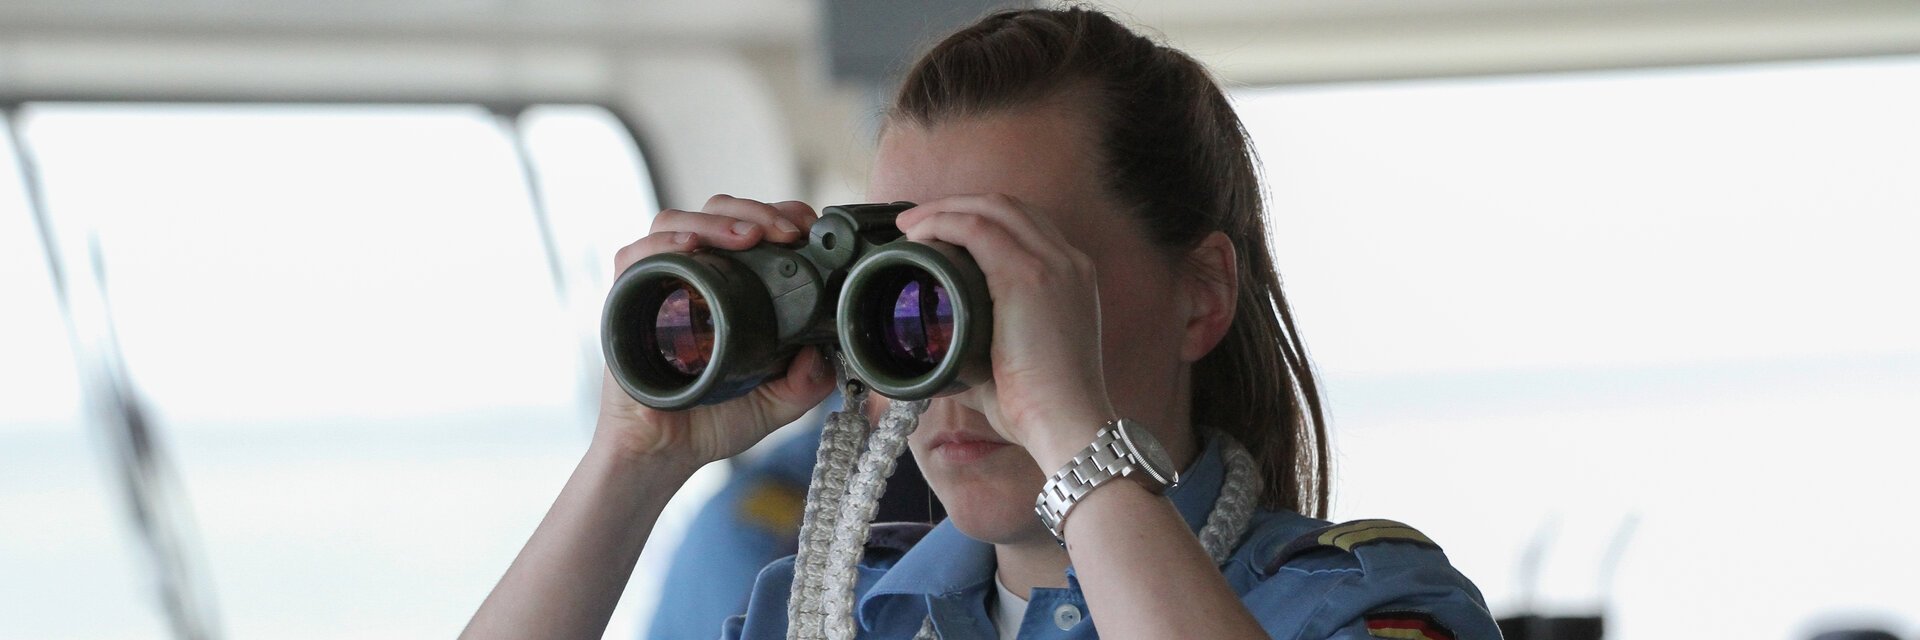 Eine Soldatin auf der BrÃ¼cke eines Schiffes schaut durch ein Fernglas